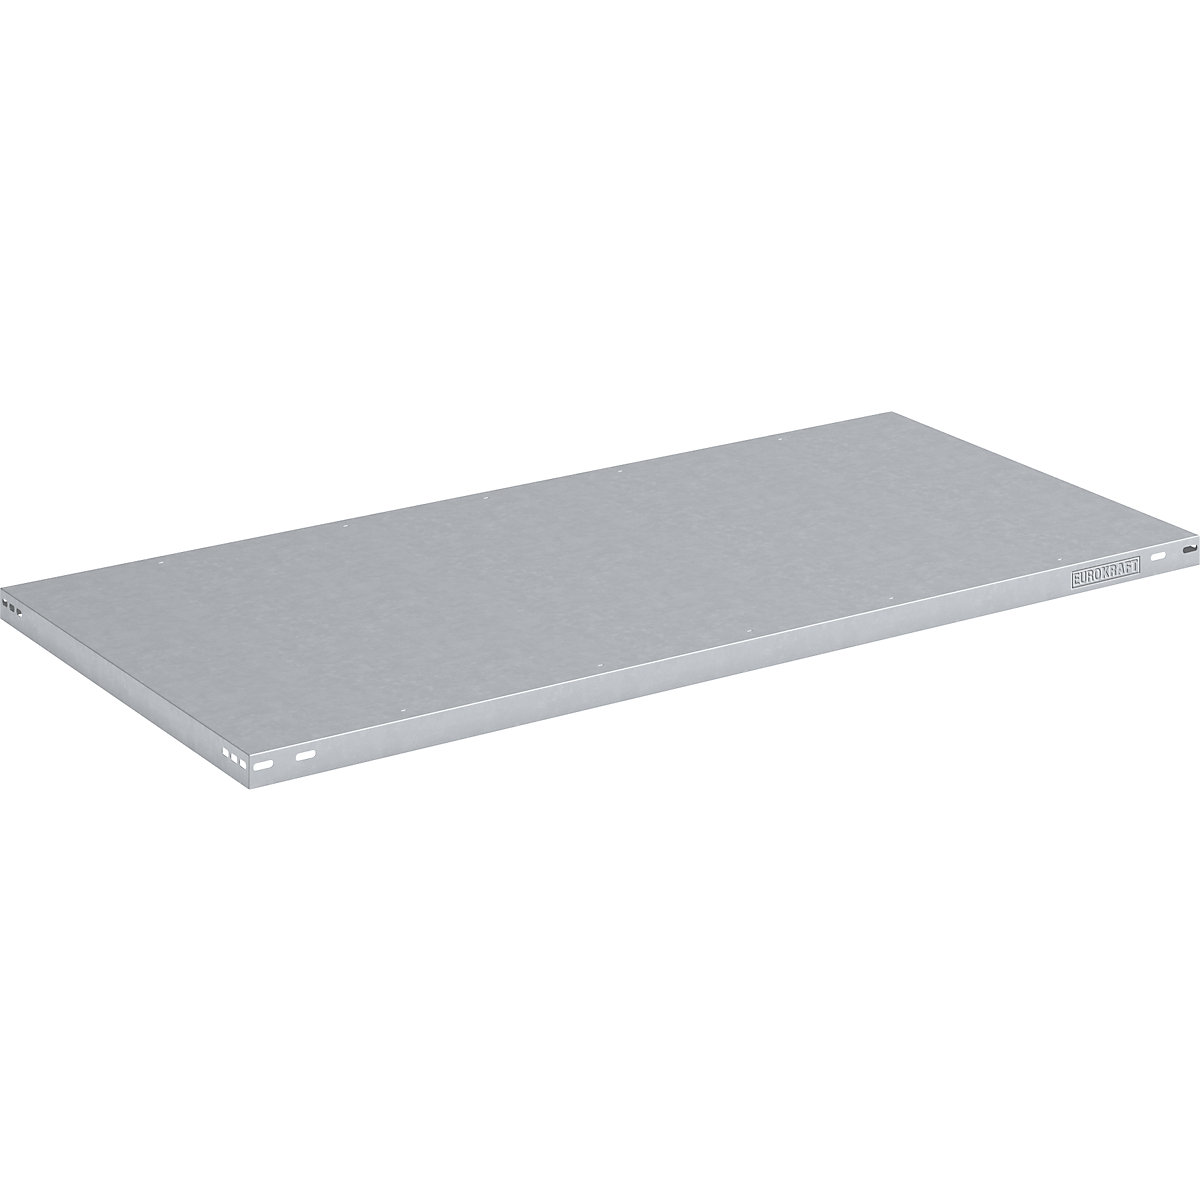 Shelf for heavy duty boltless shelving unit – eurokraft pro, zinc-plated, WxD 1300 x 800 mm